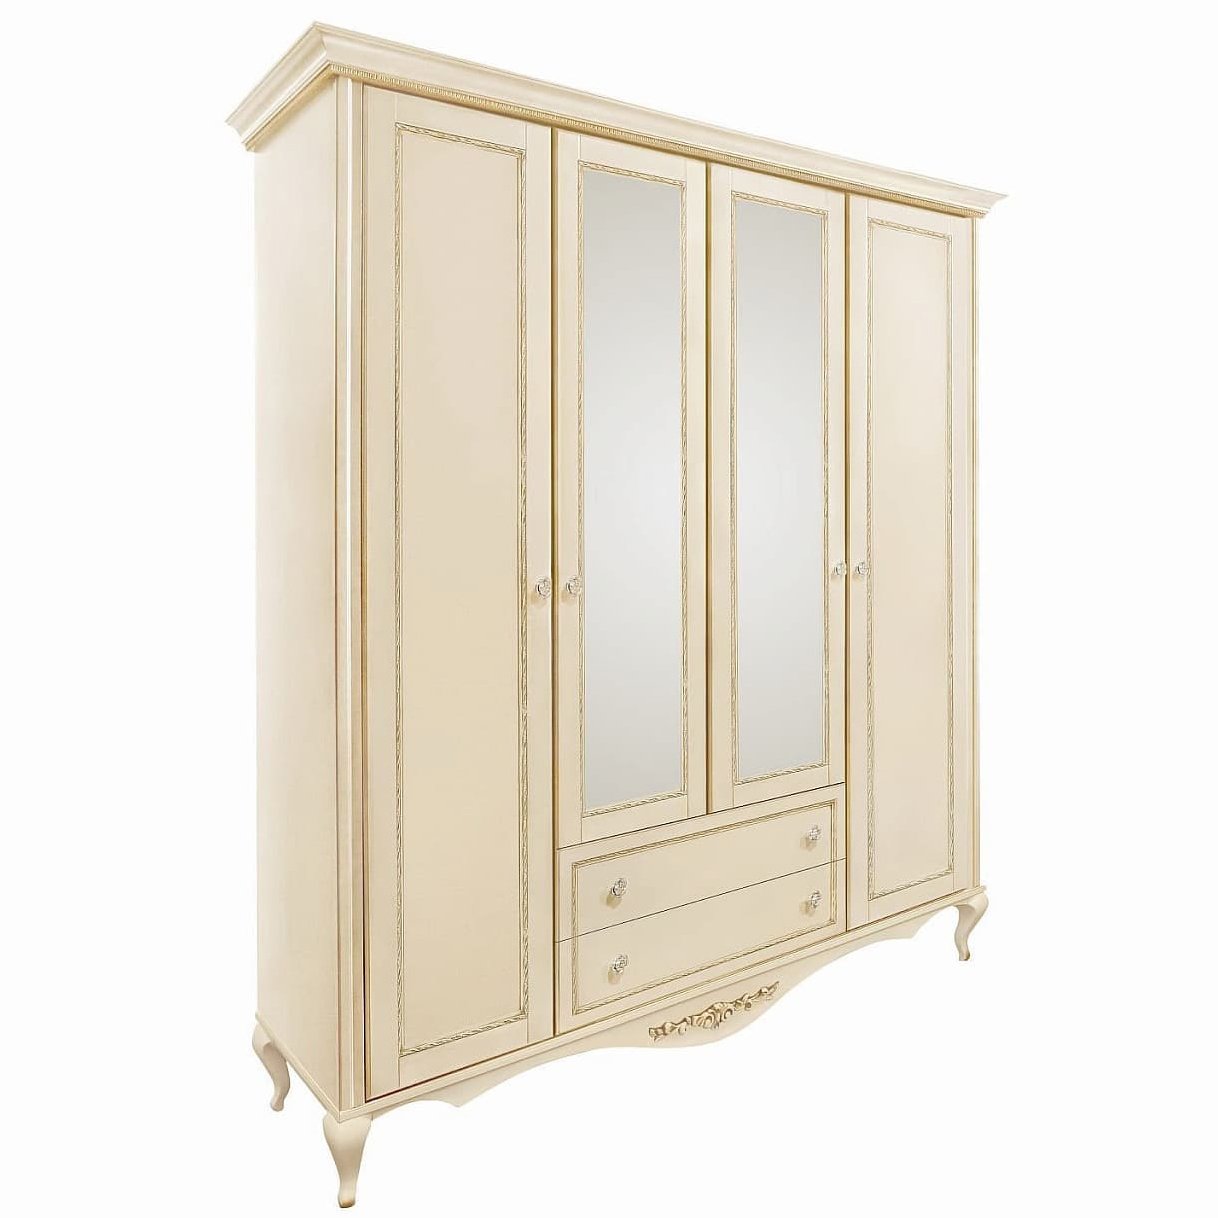 Шкаф платяной Timber Неаполь, 4-х дверный с зеркалами 204x65x227 см цвет: ваниль с золотом (T-524)T-524